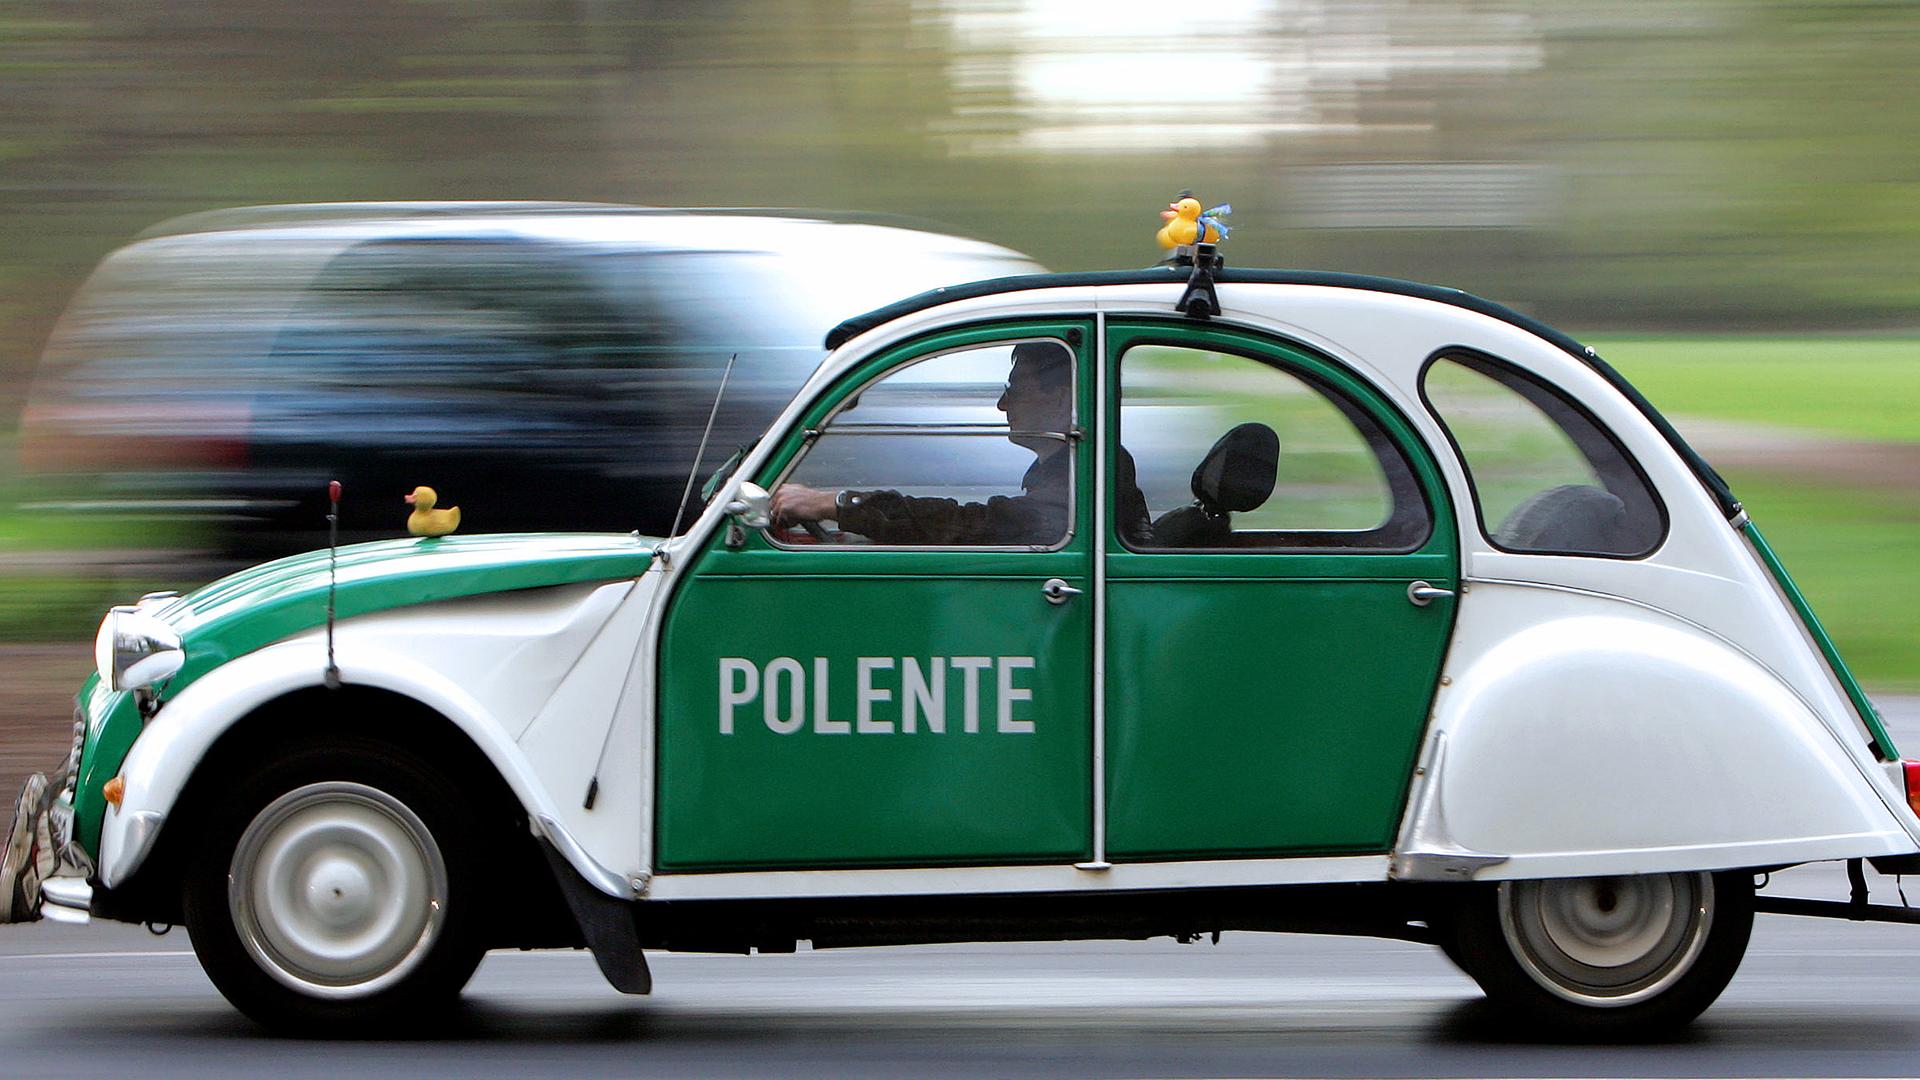 Archiv: Johannes Wittig fährt mit seiner "Polente" durch Köln, aufgenommen am  07.04.2005